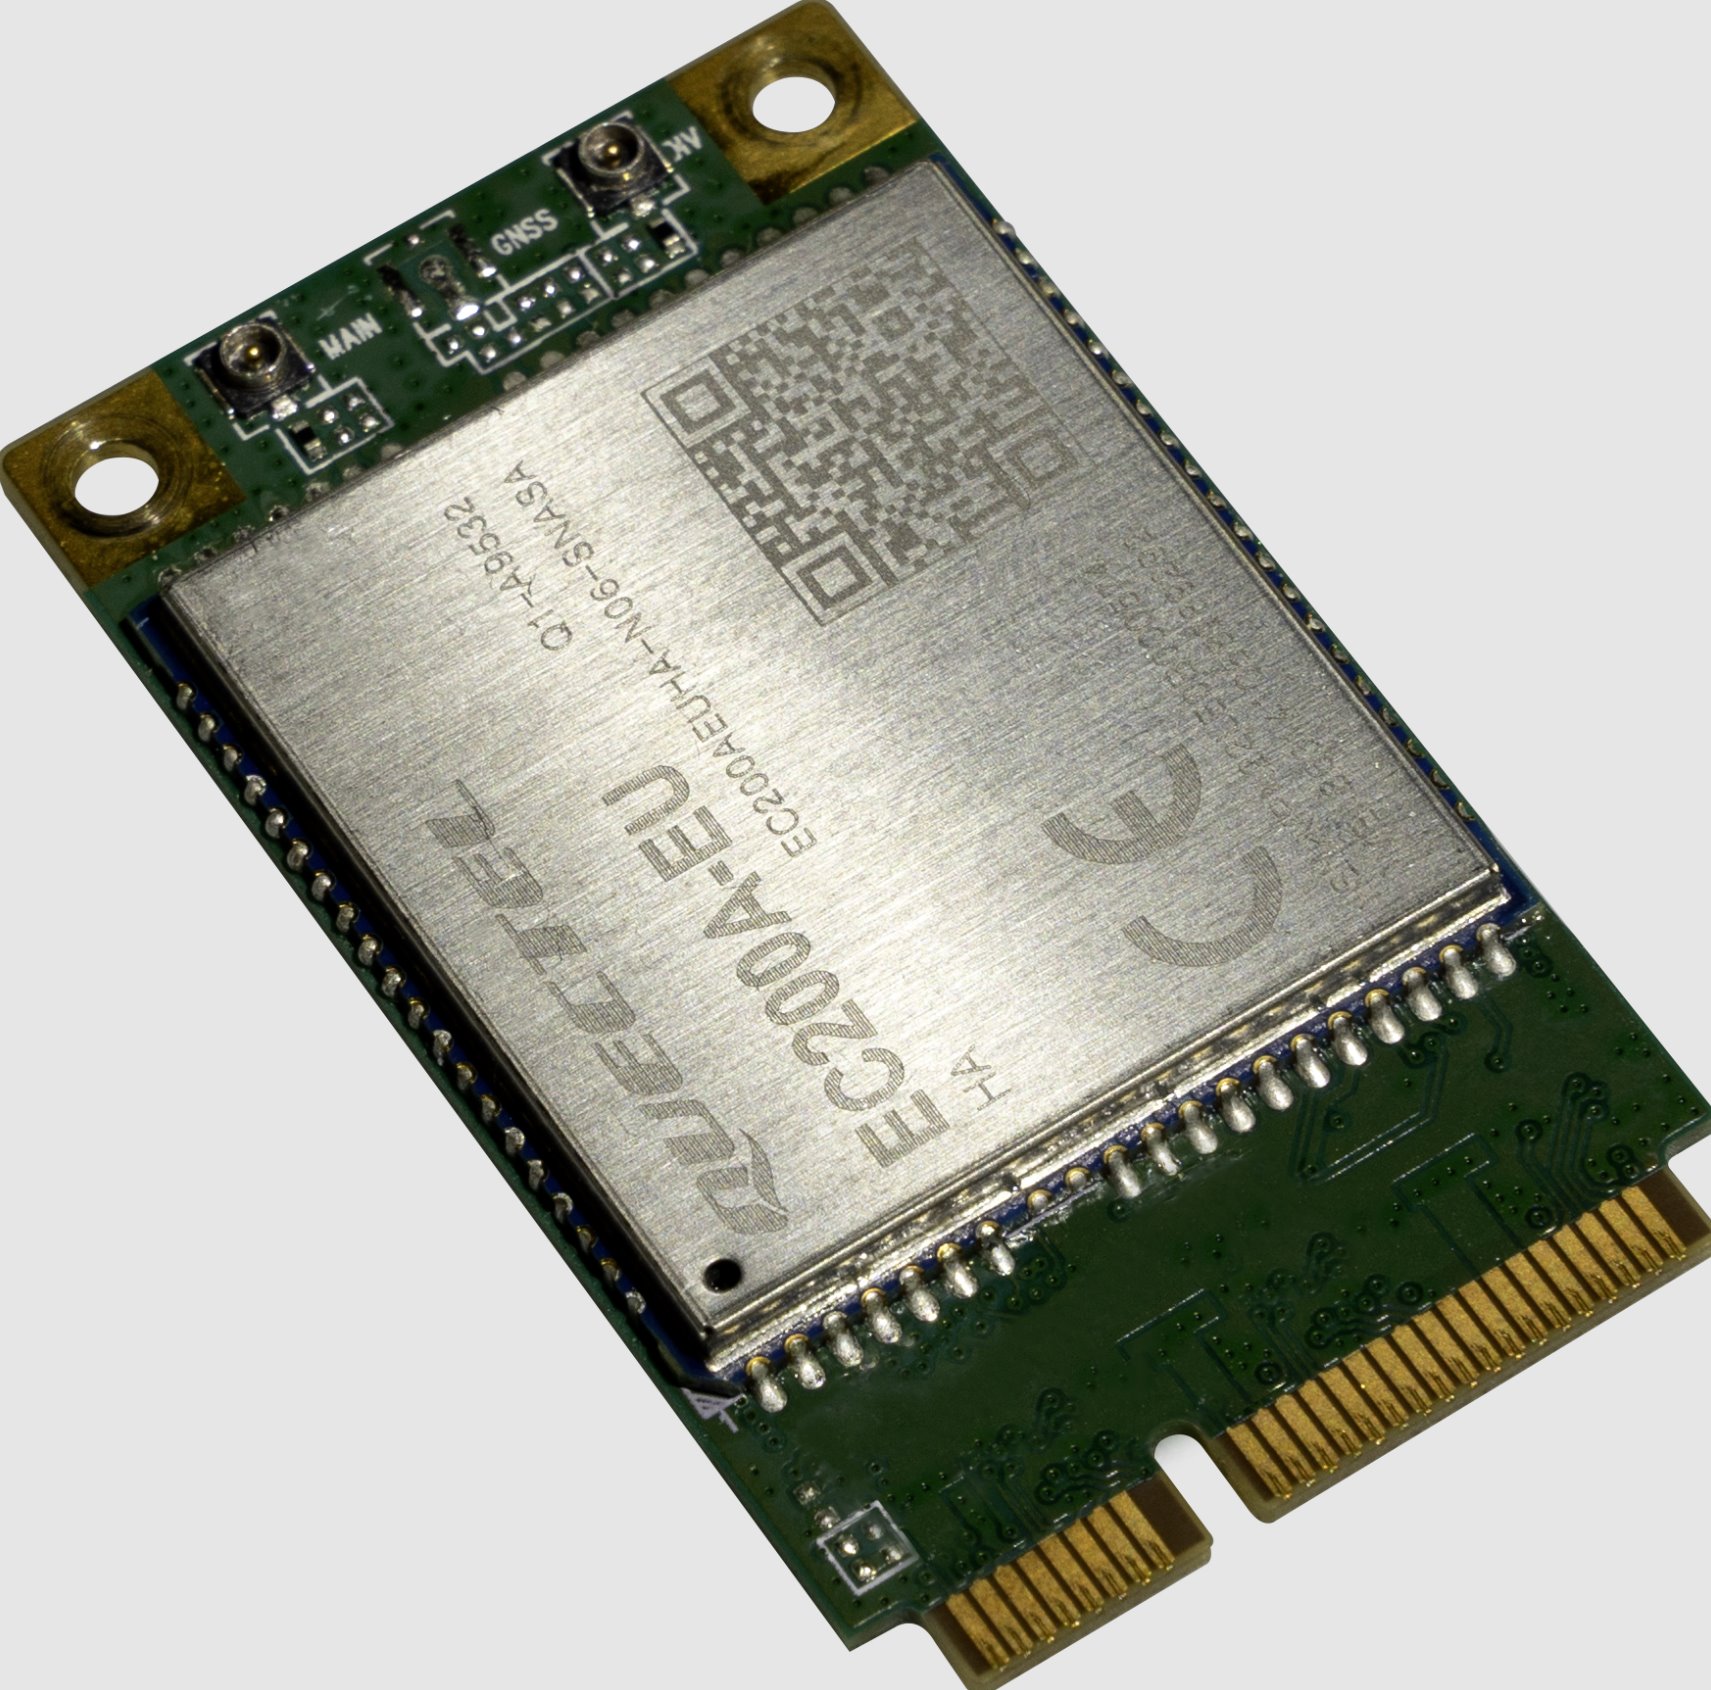 MikroTik R11eL-EC200A-EU, LTE miniPCI-e modem, 2x u.Fl